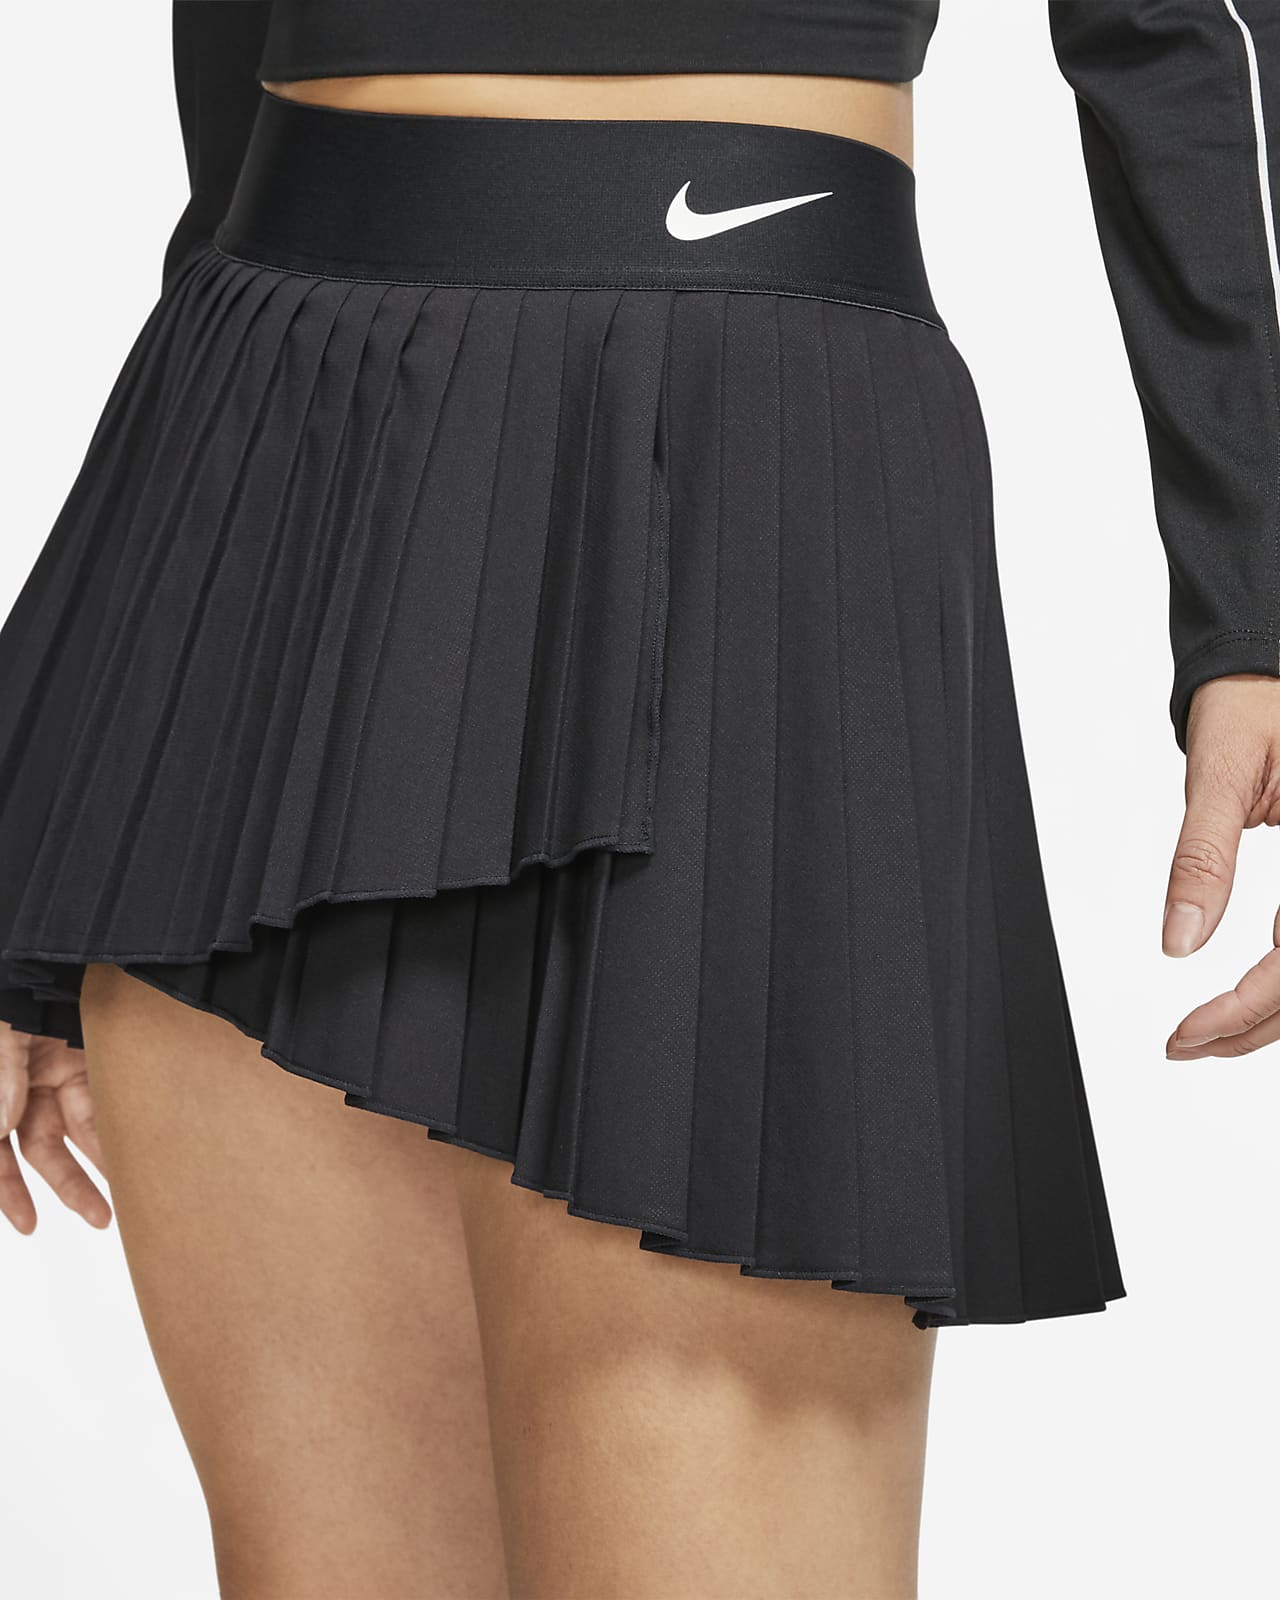 nike tennis wear women's